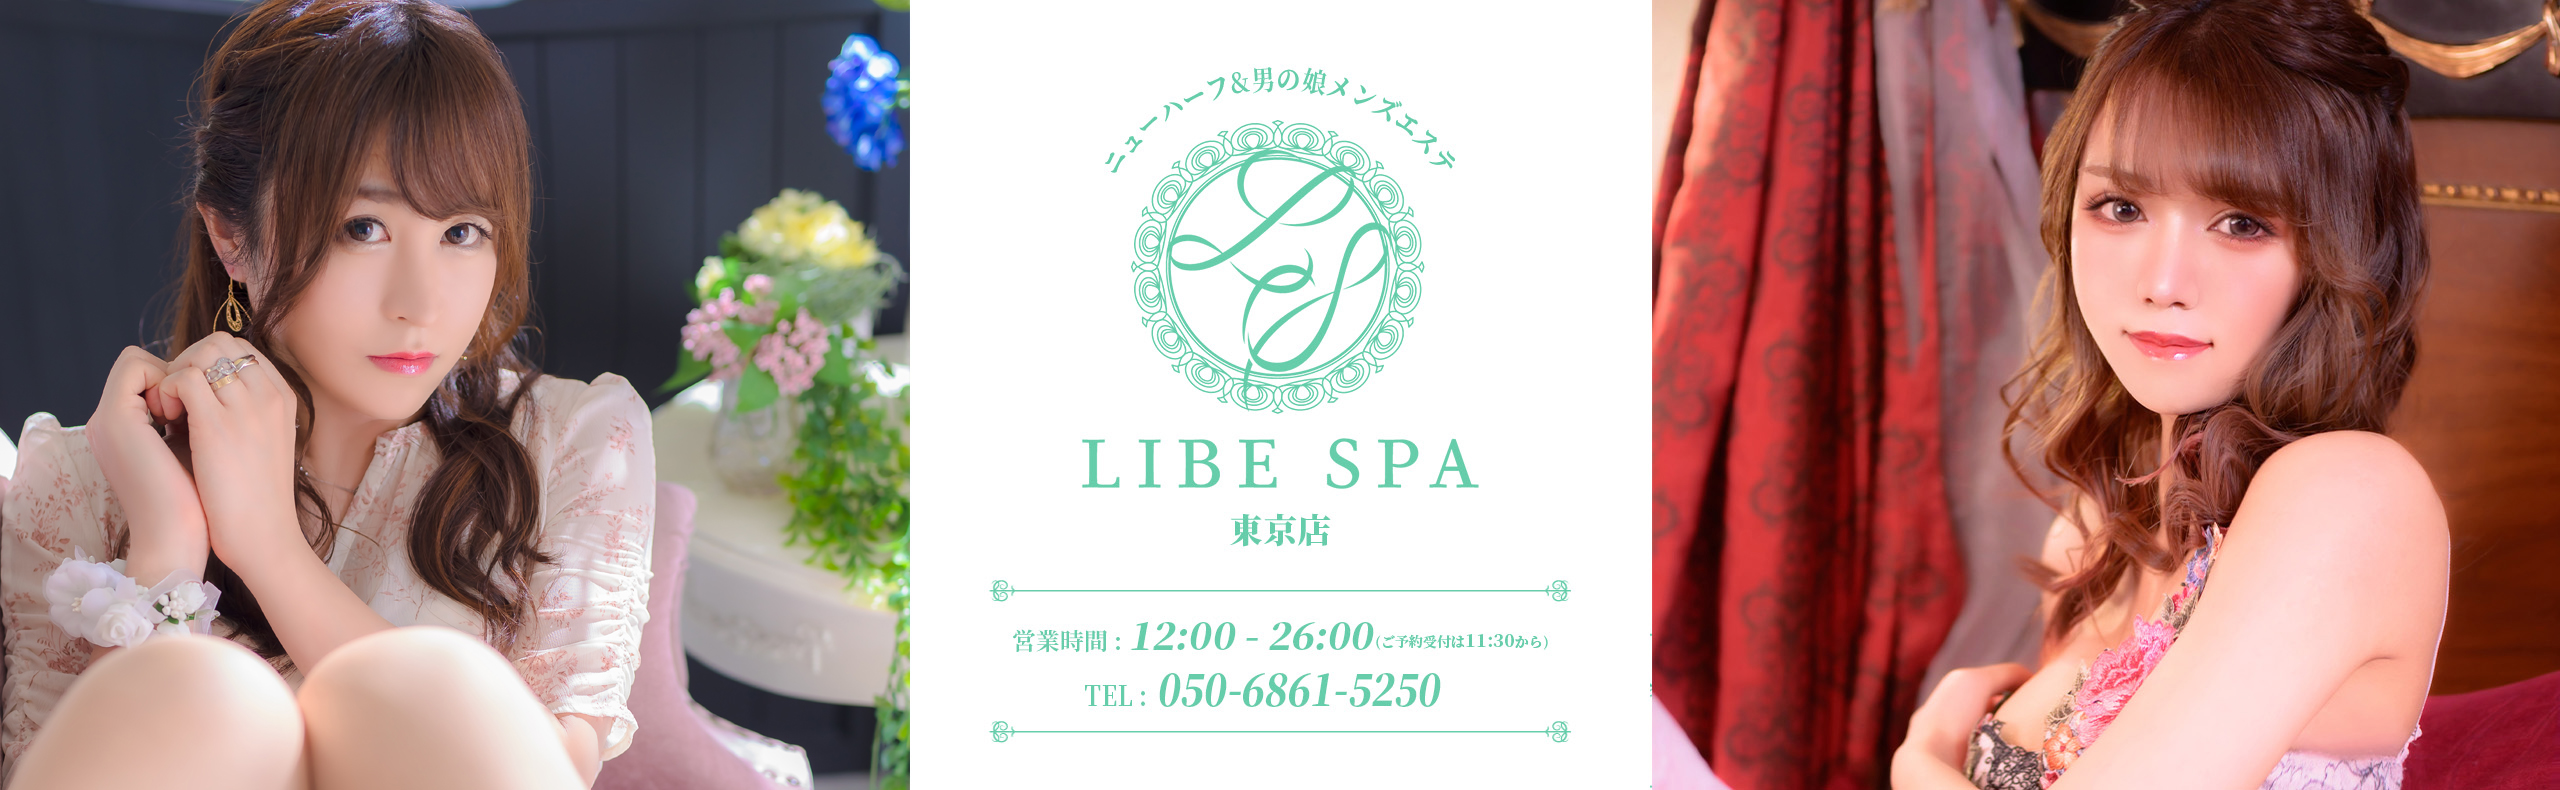 LIBE SPA 東京店メインビジュアル